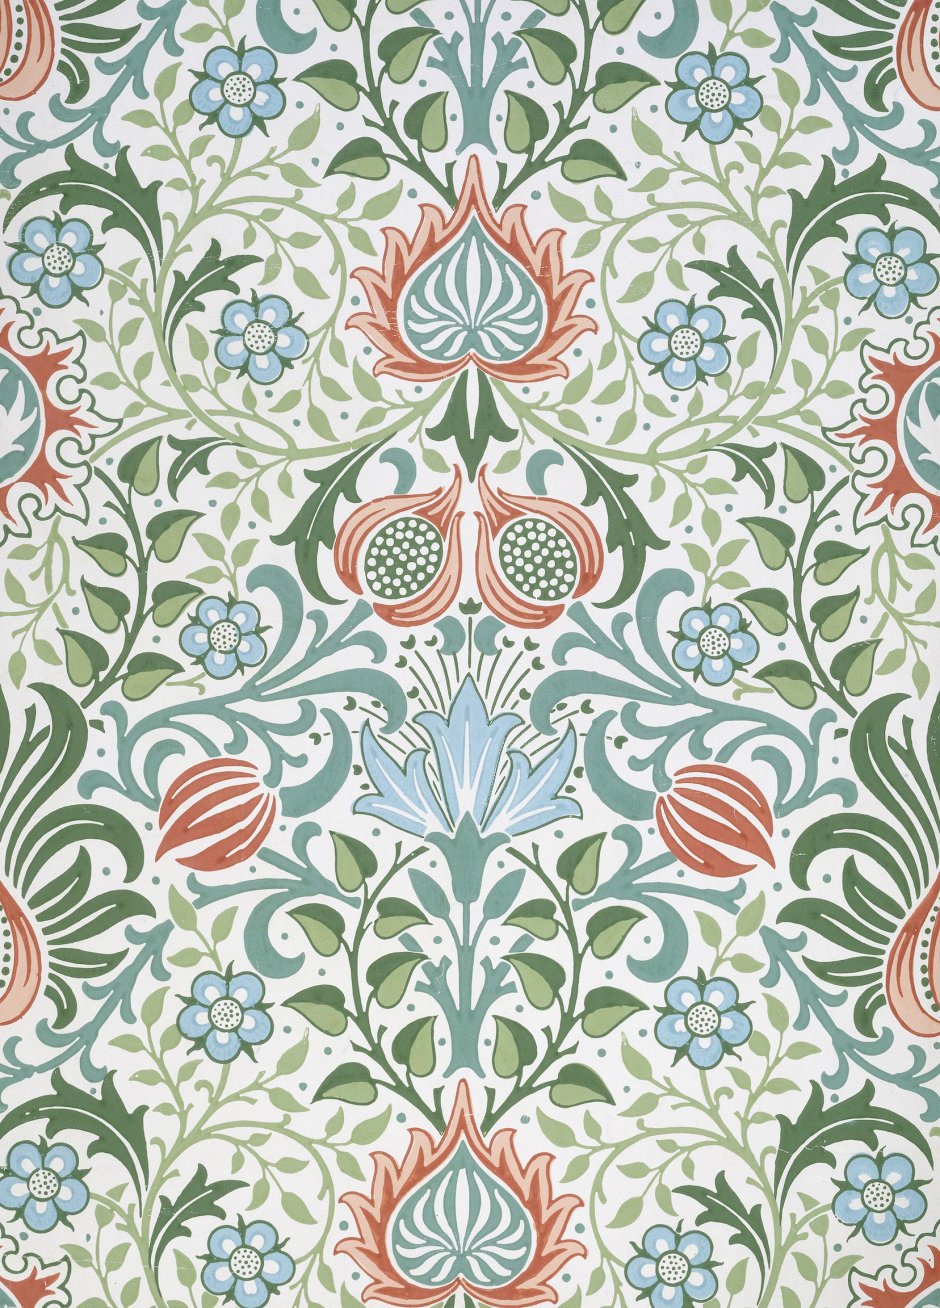 Persian pattern